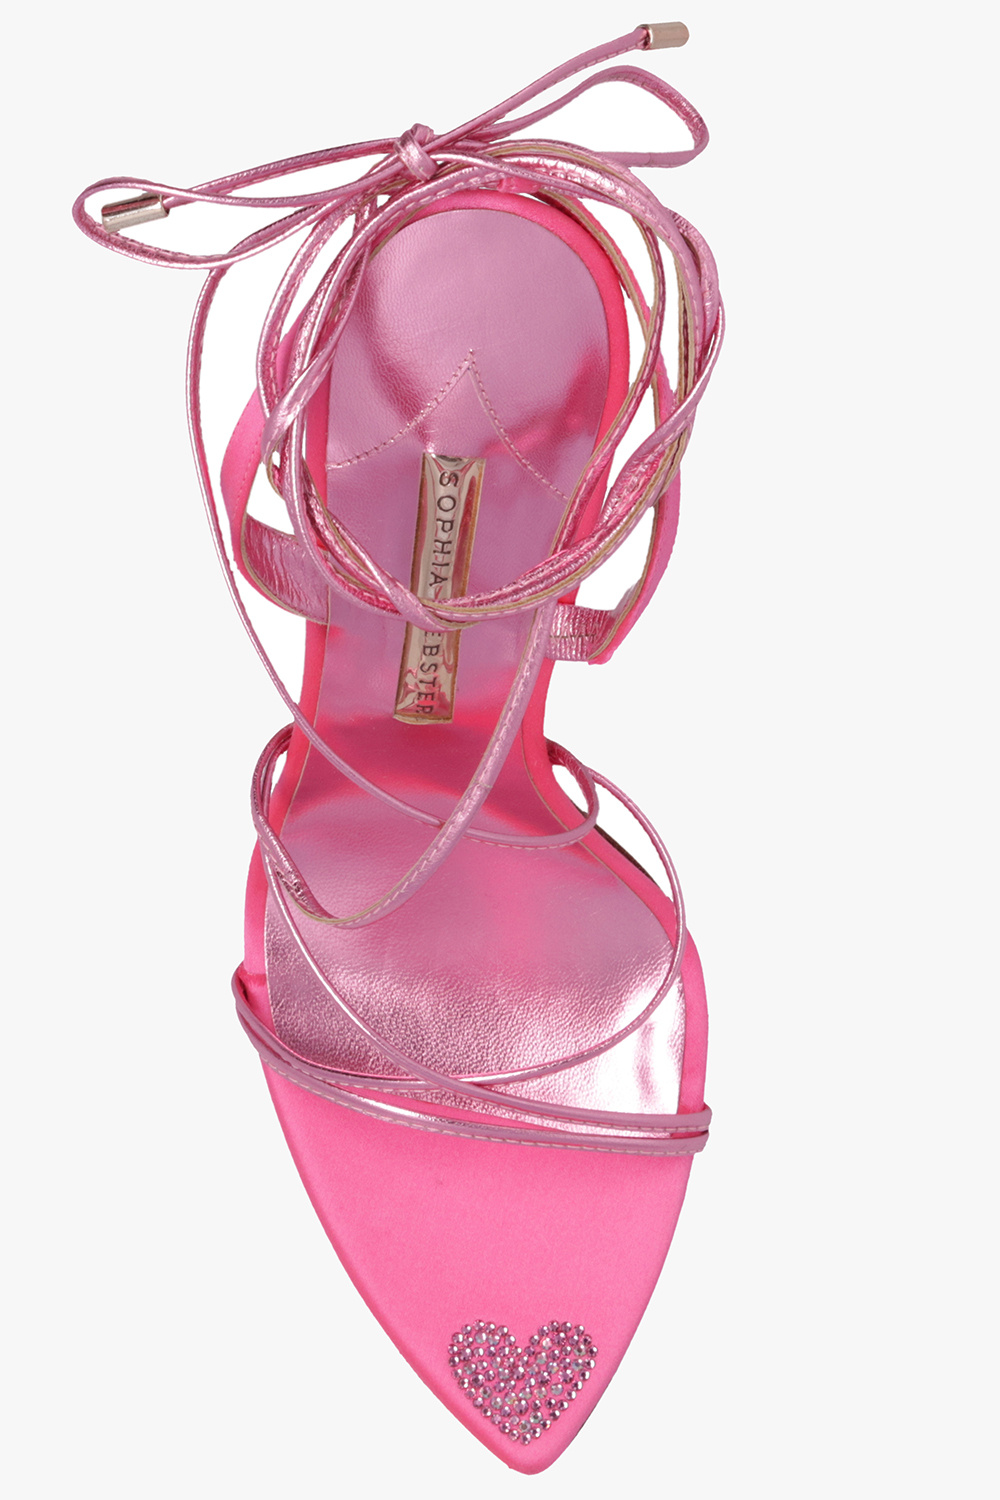 Sophia Webster ‘Amora’ heeled sandals